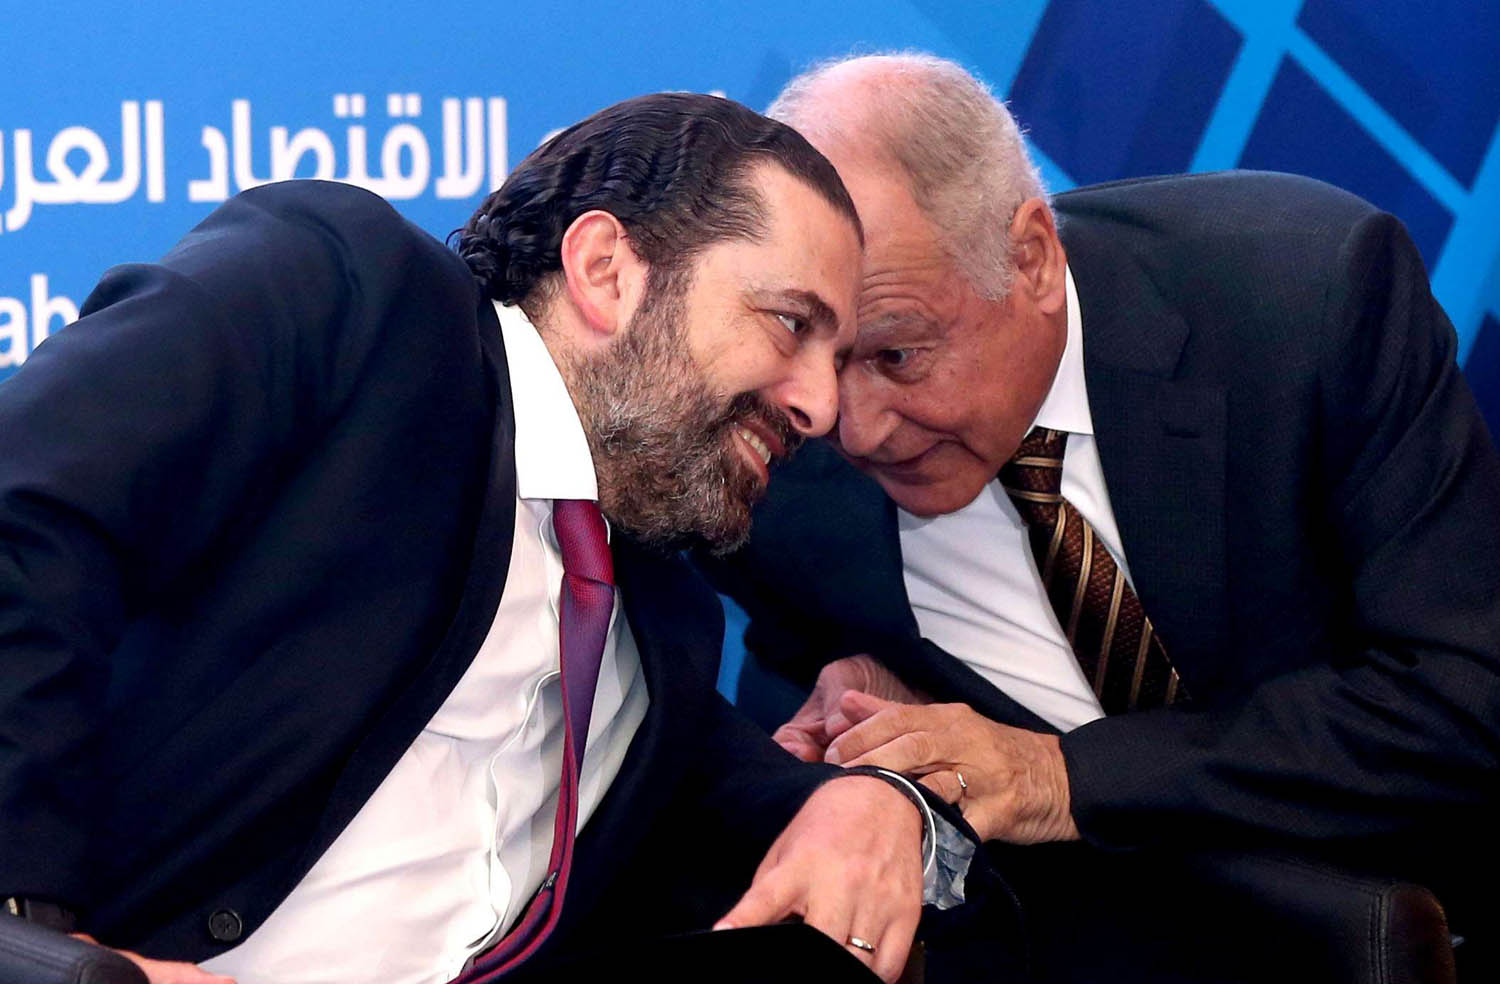 أمين عام الجامعة العربية أحمد أبوالغيط يتحدث مع رئيس الوزراء اللبناني سعد الحريري في بيروت